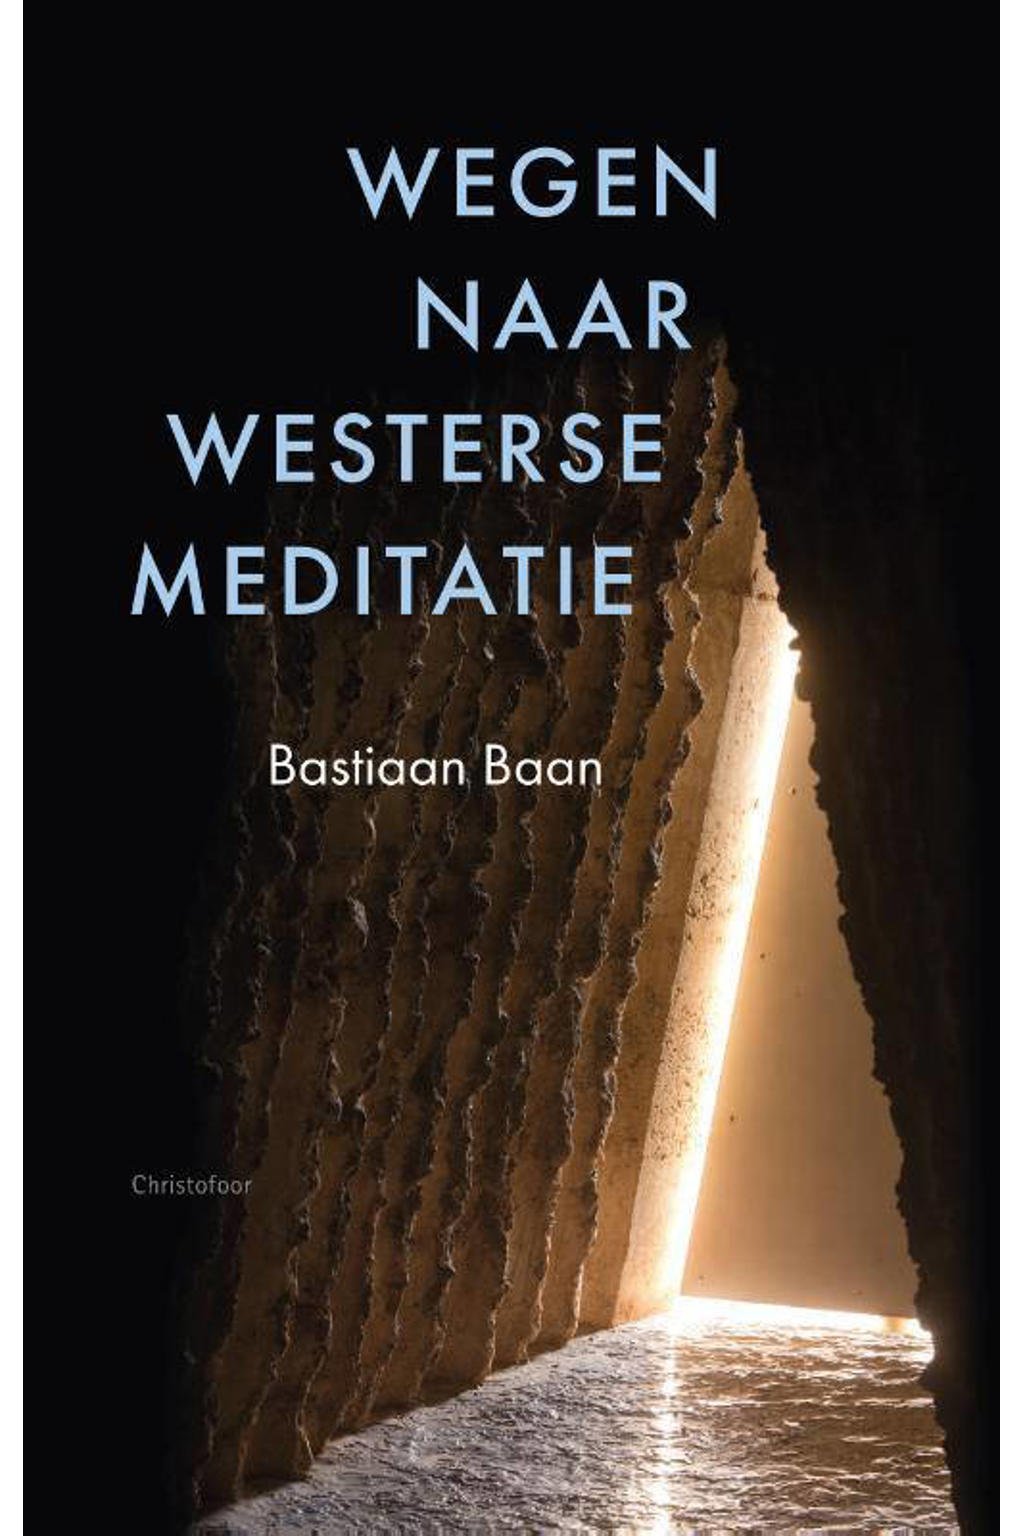 Wegen naar westerse meditatie - Bastiaan Baan